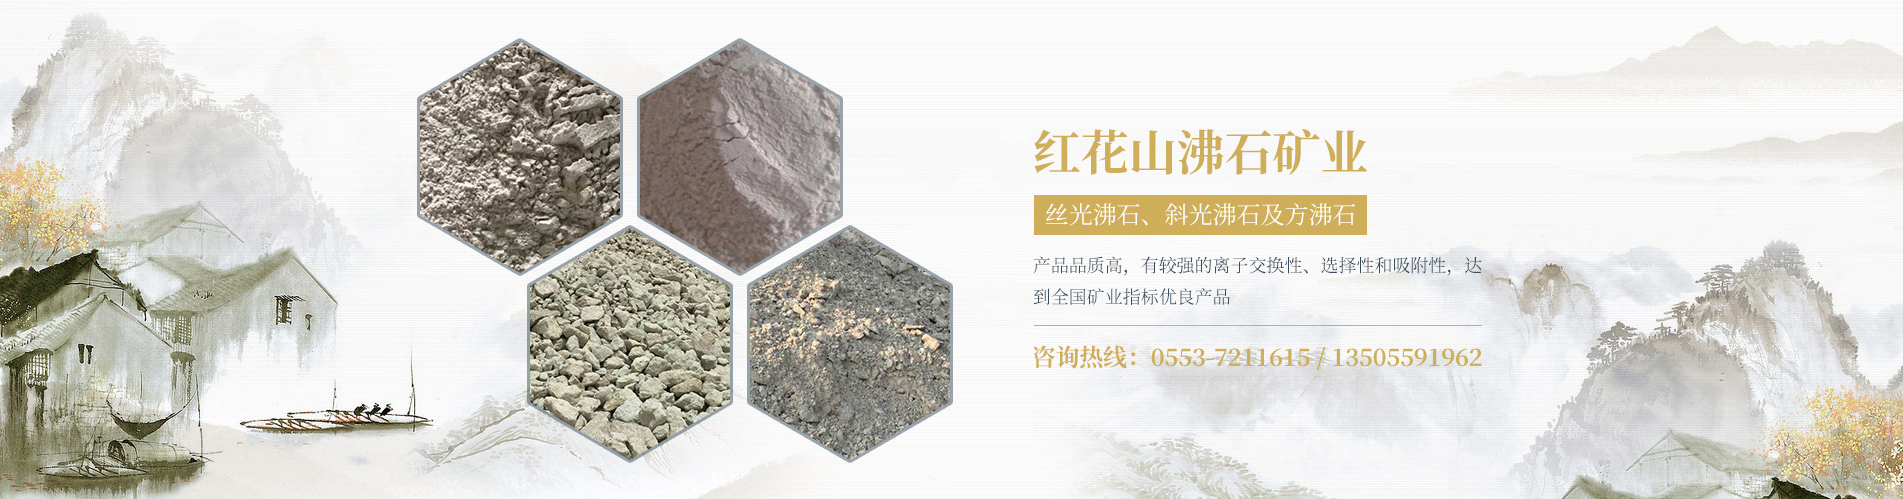 芜湖红花山沸石矿业有限公司